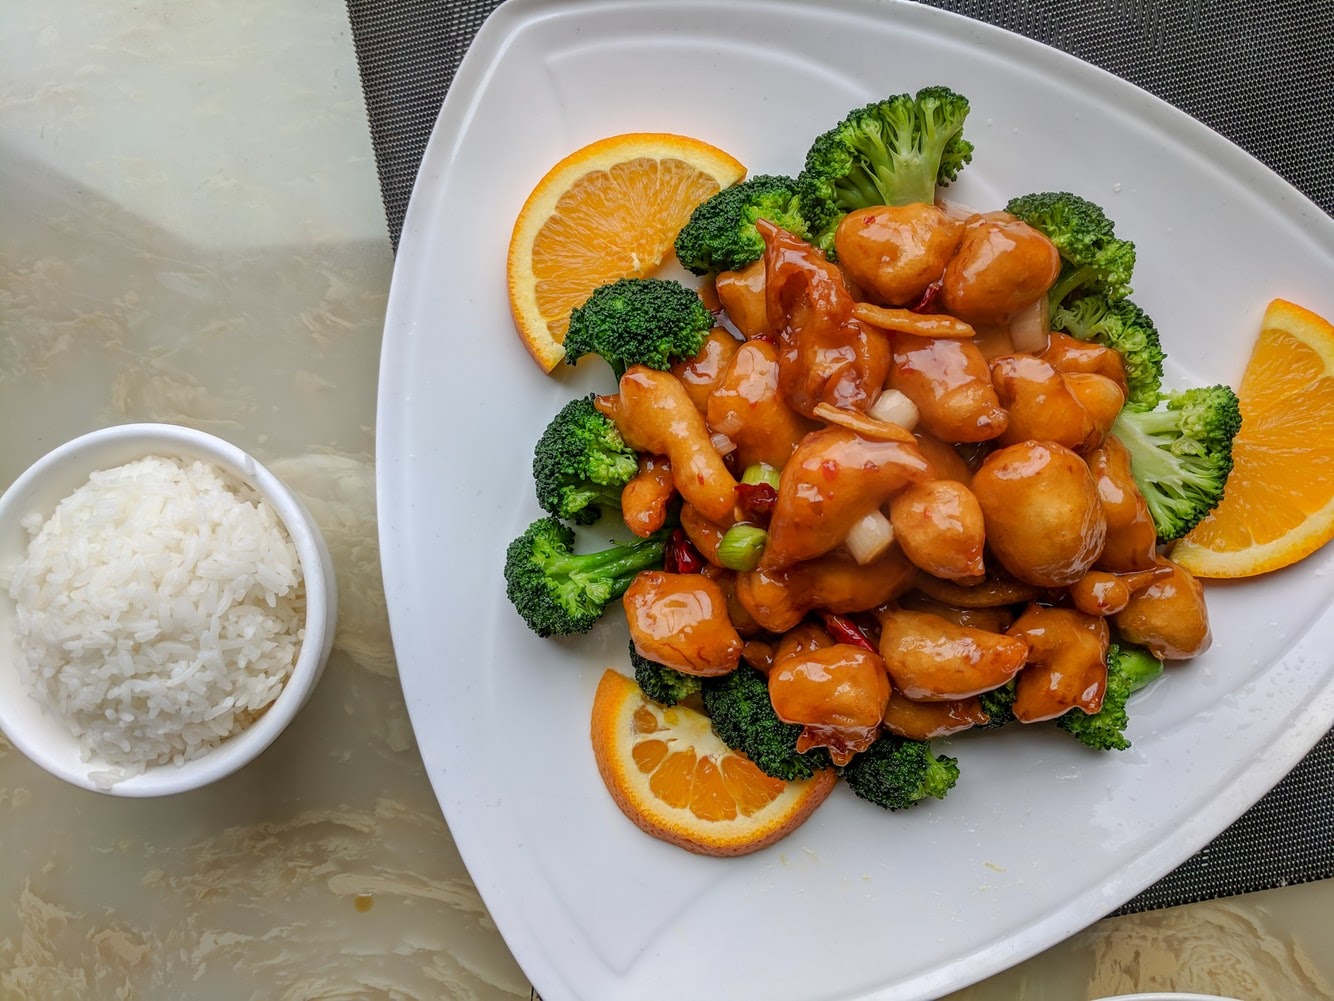 Best Chinese Food Austin: orange chicken